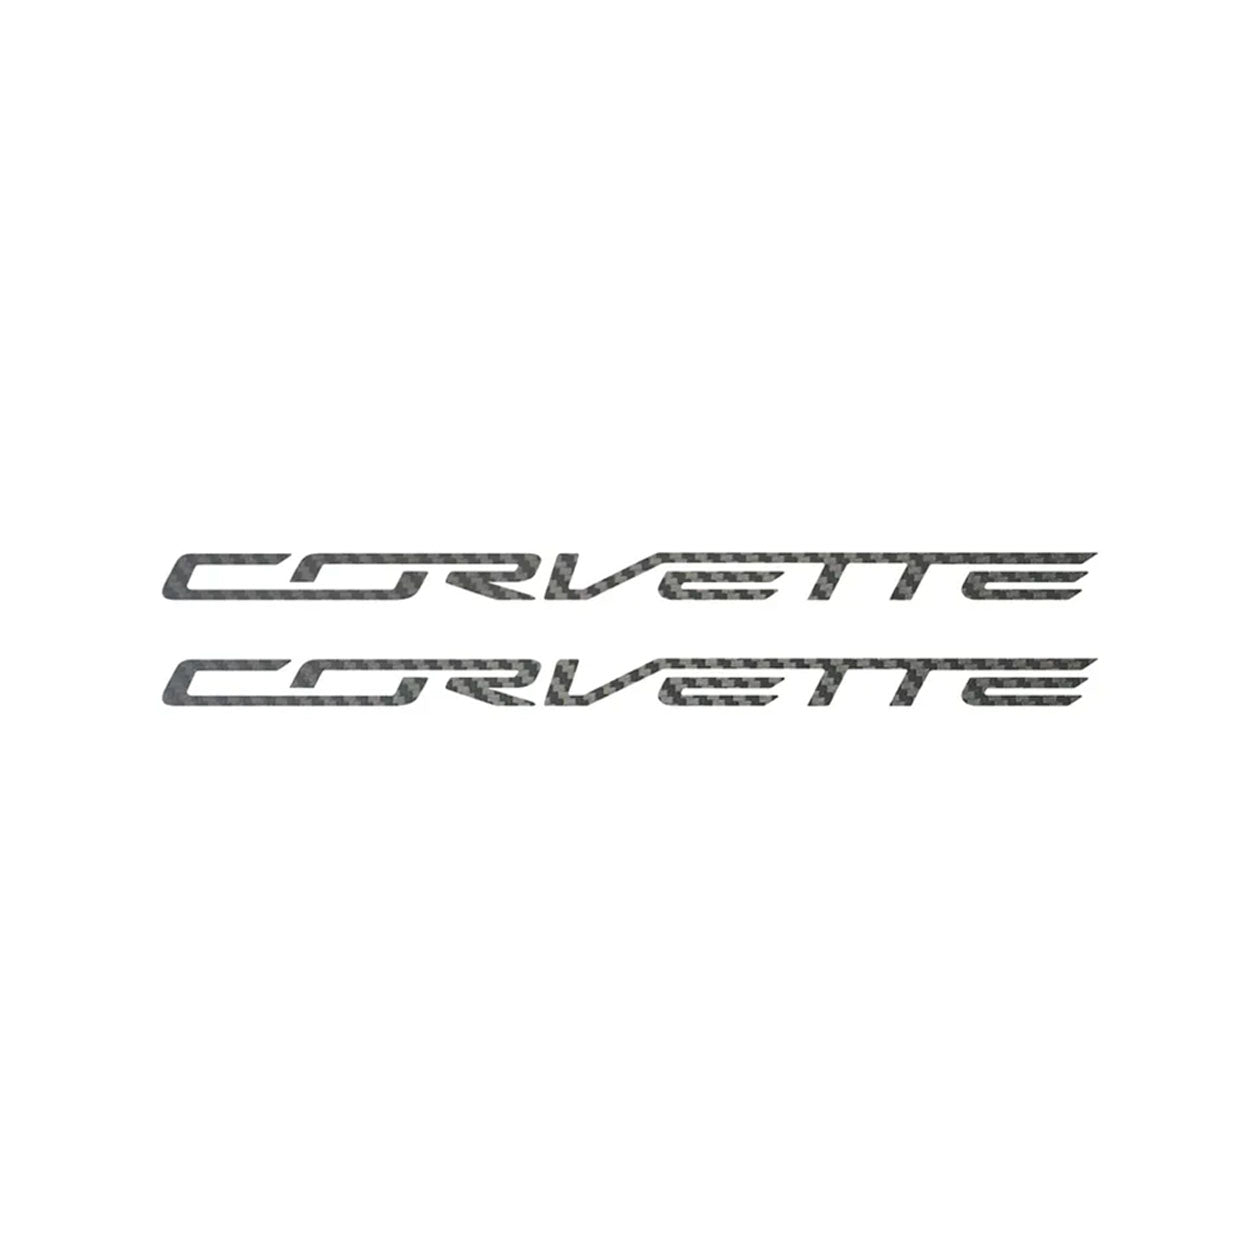 C6 - C8 Corvette Side Skirt Vinyl Decals - Corvette Script